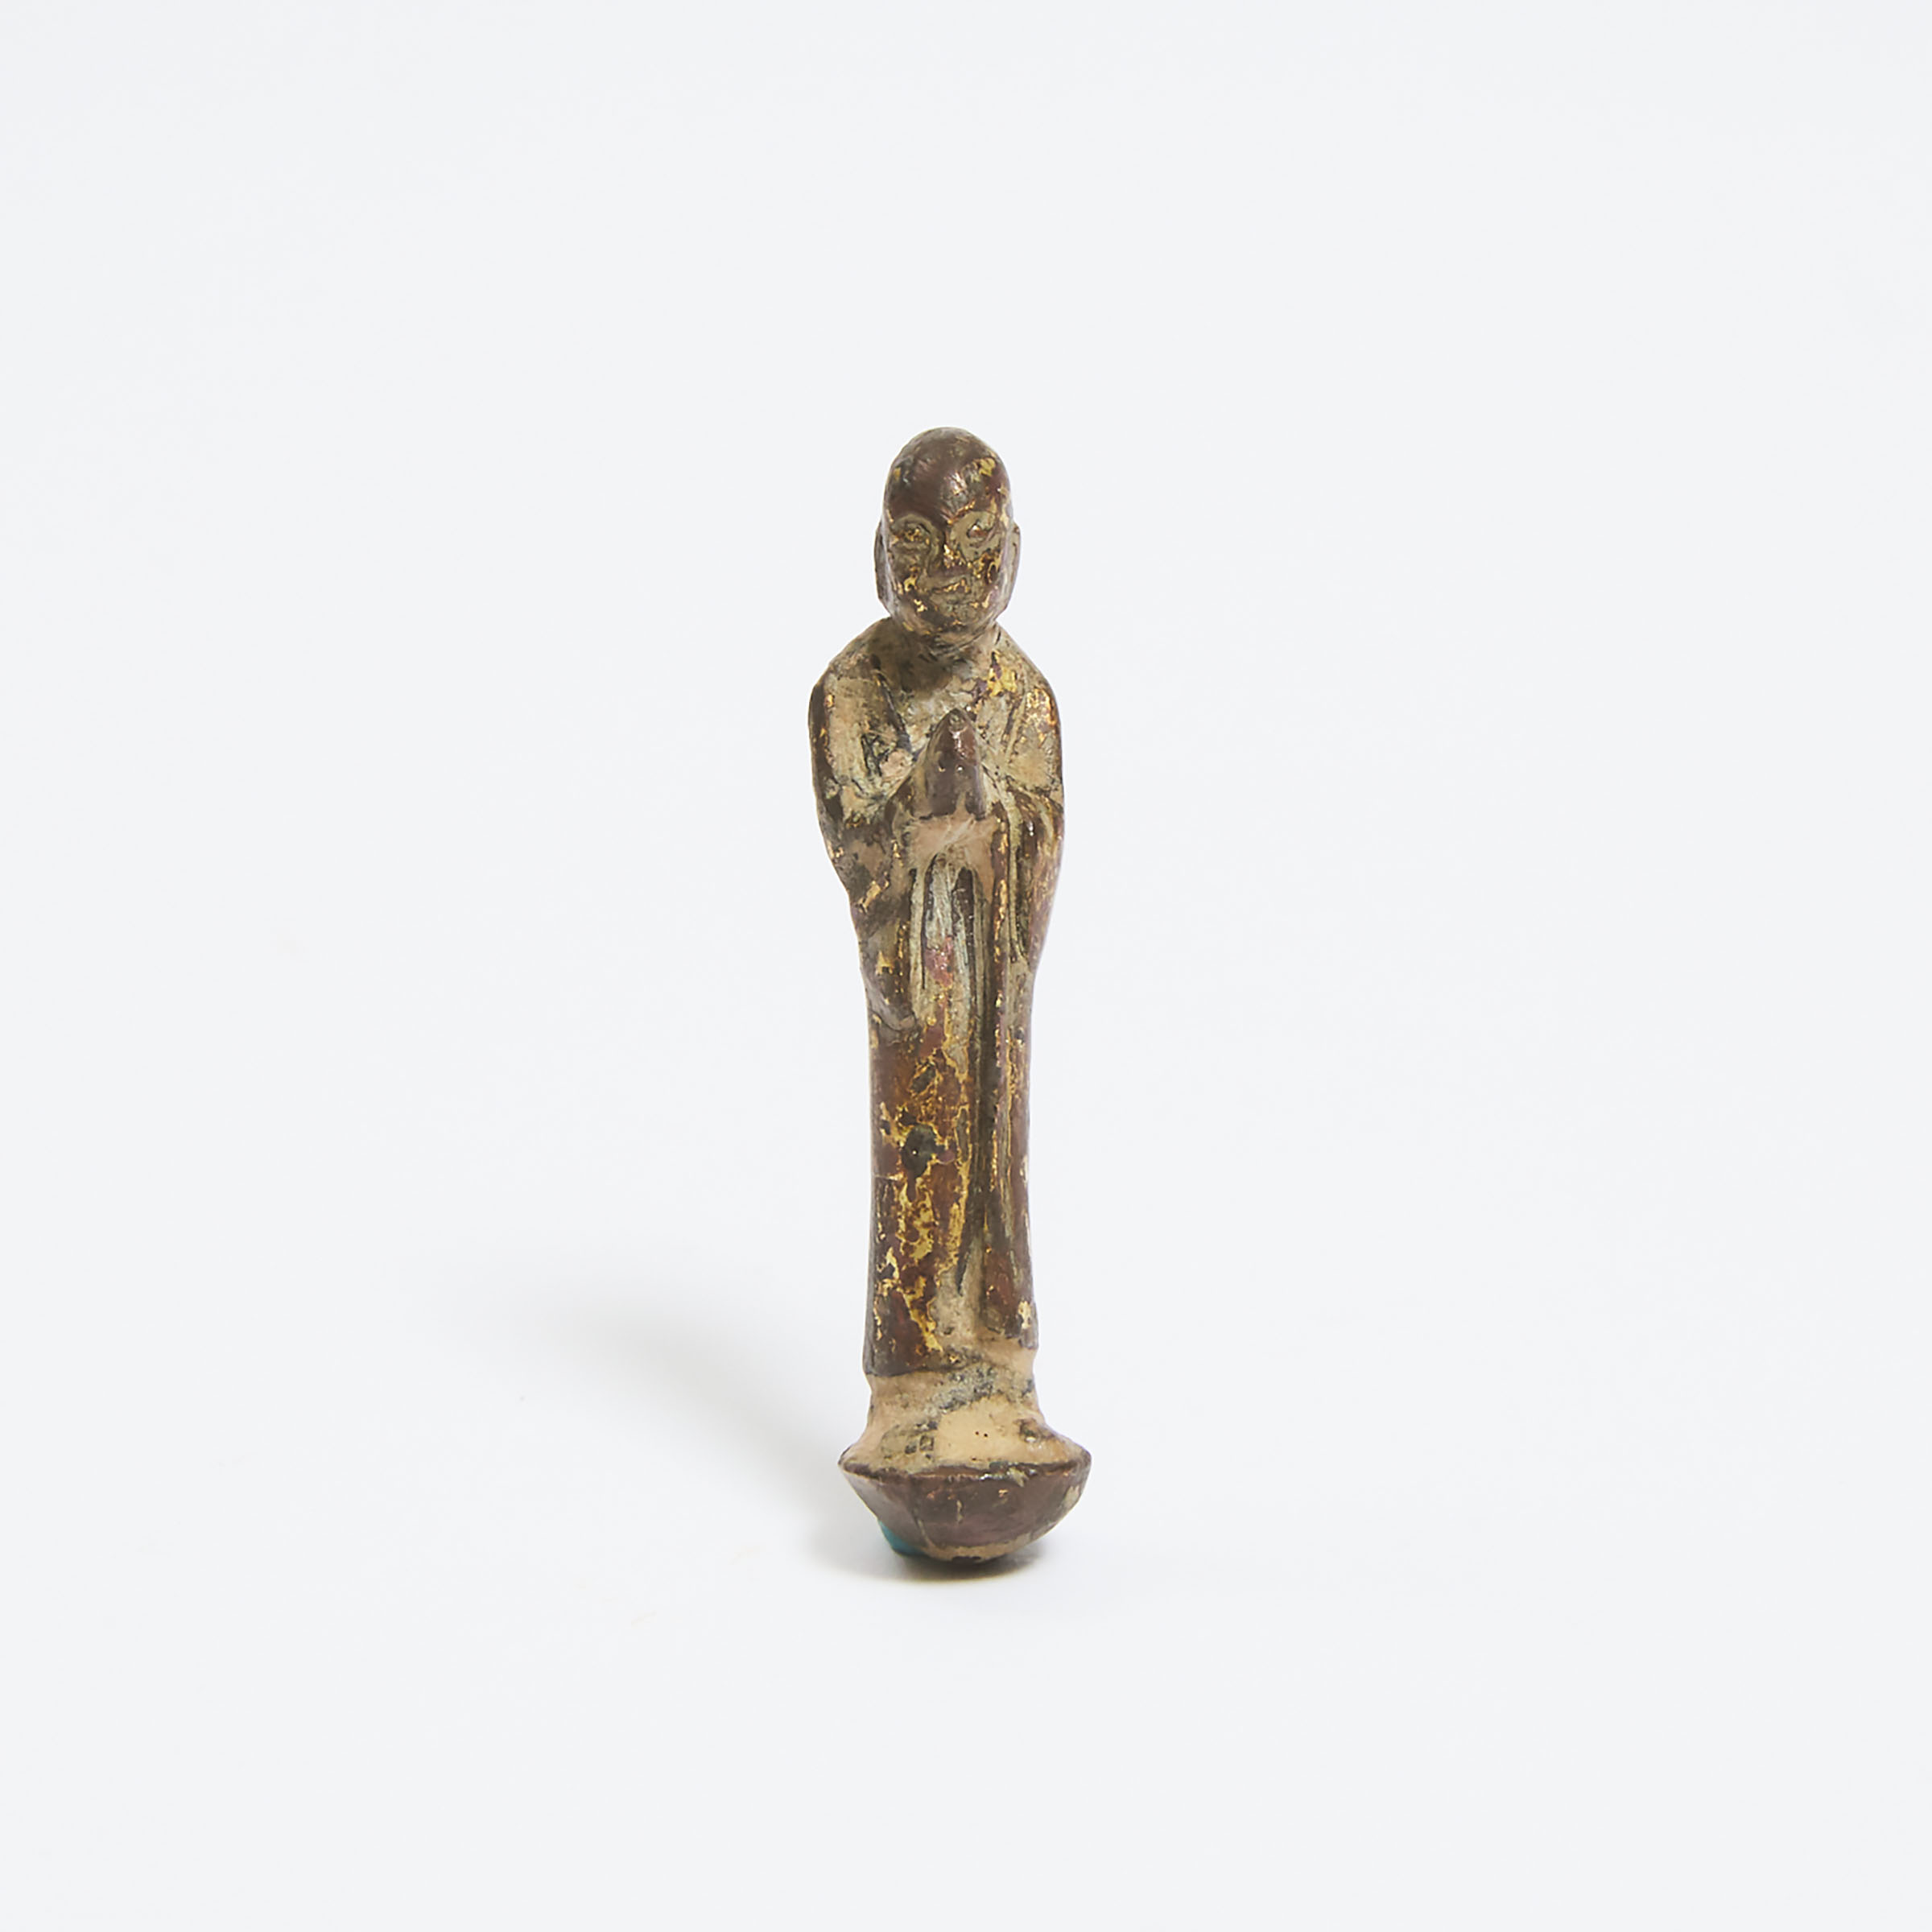 A Miniature Gilt Bronze Figure 3abe2d